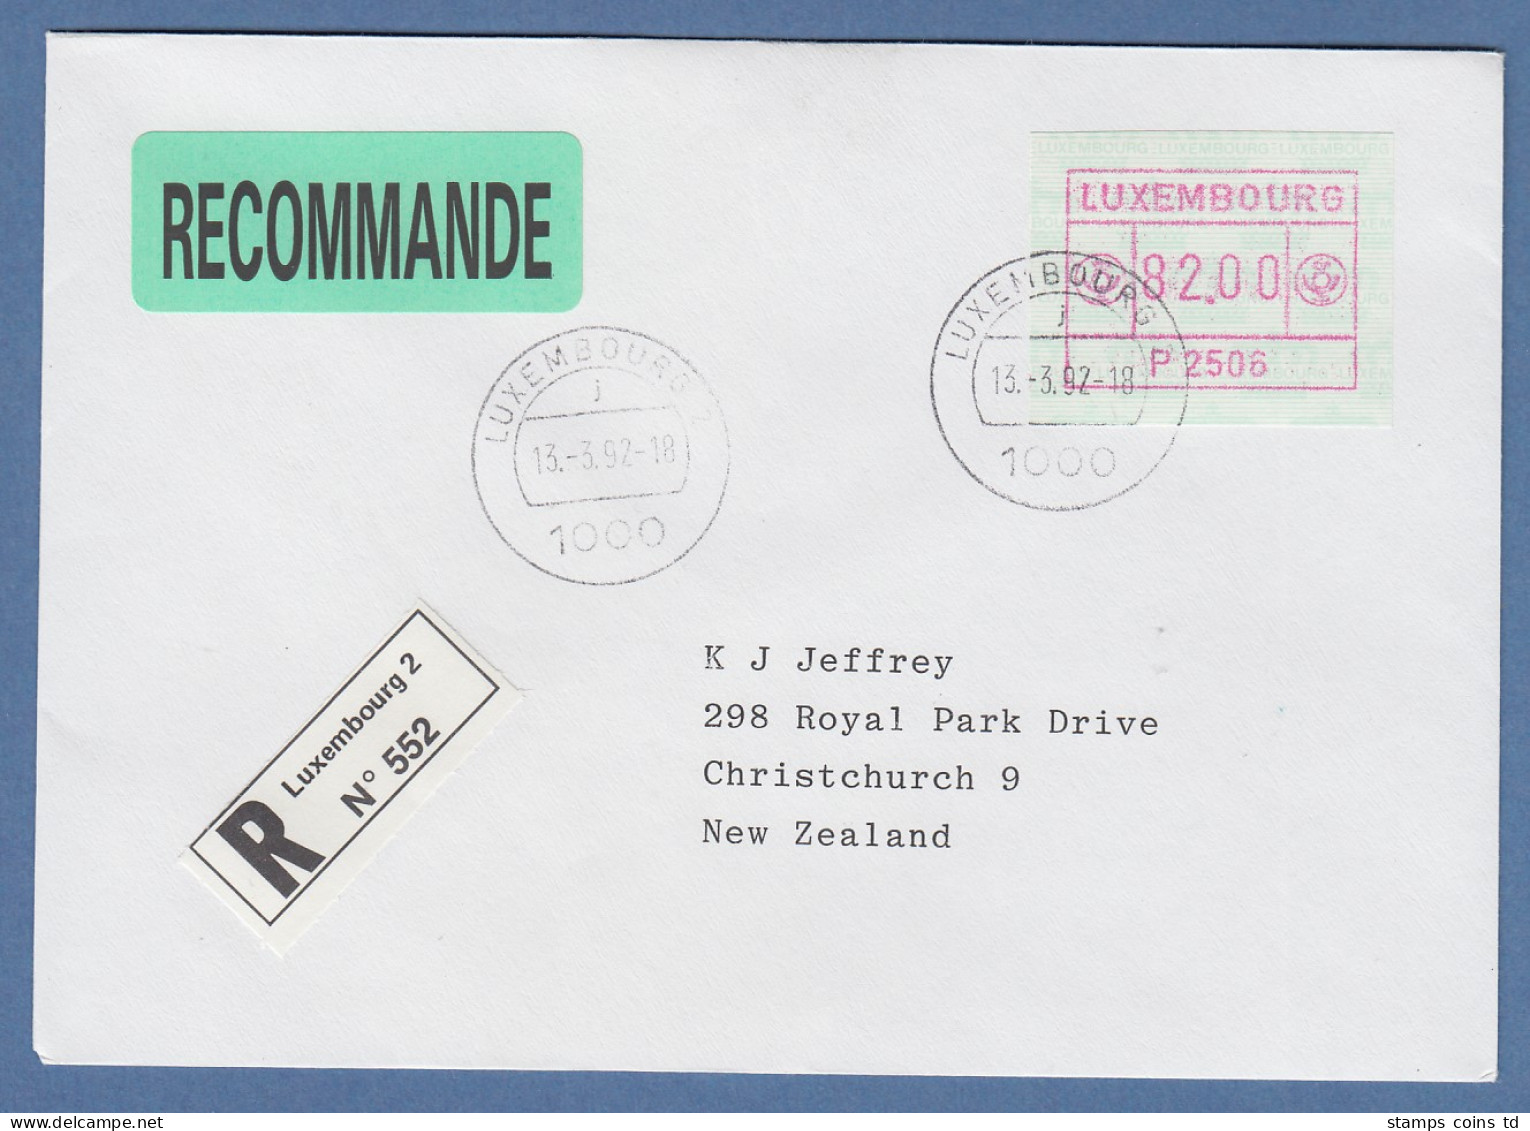 Luxemburg ATM P2506 Wert 82.00 Auf R-Brief Nach Neuseeland, O 13.3.92 - Postage Labels